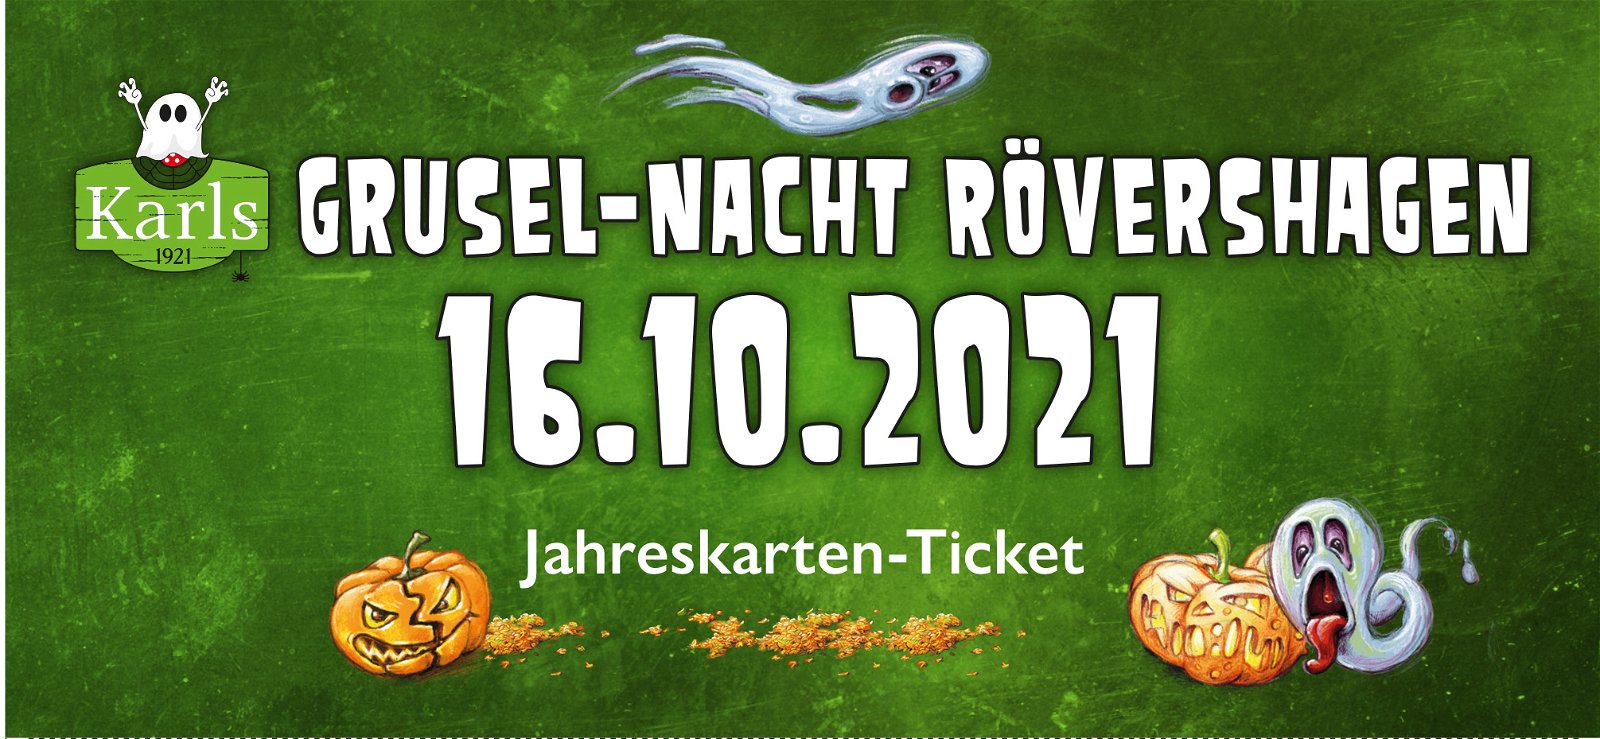 Grusel Nacht Rovershagen 16 10 2021 Jahreskarten Tickets